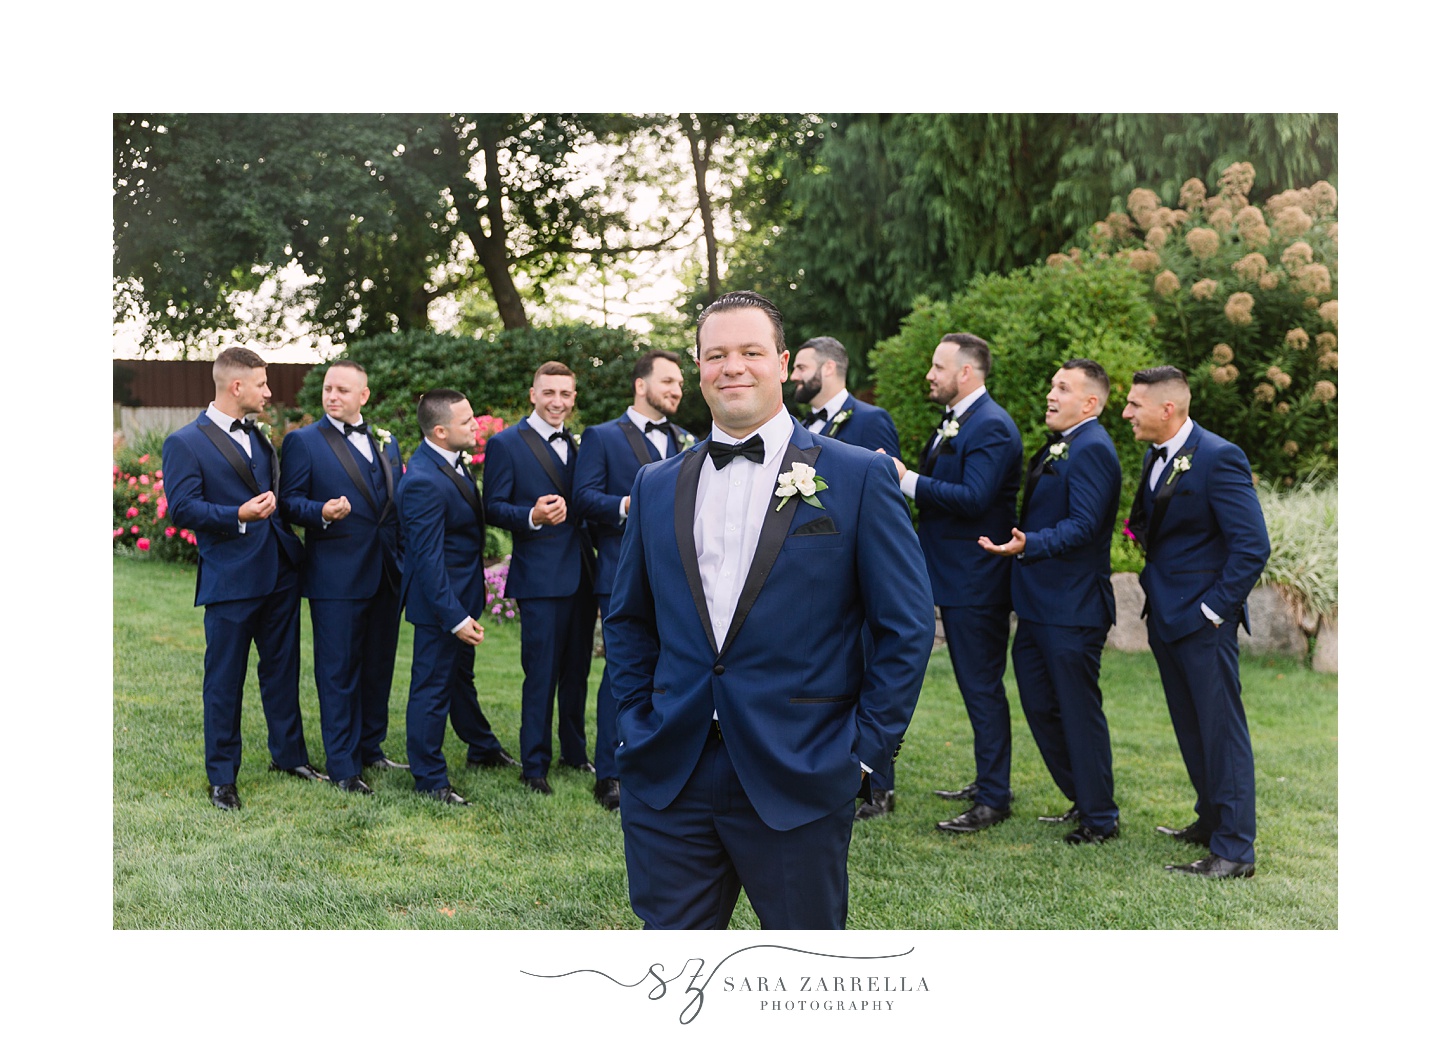 groom stands in front of groomsmen in navy suits